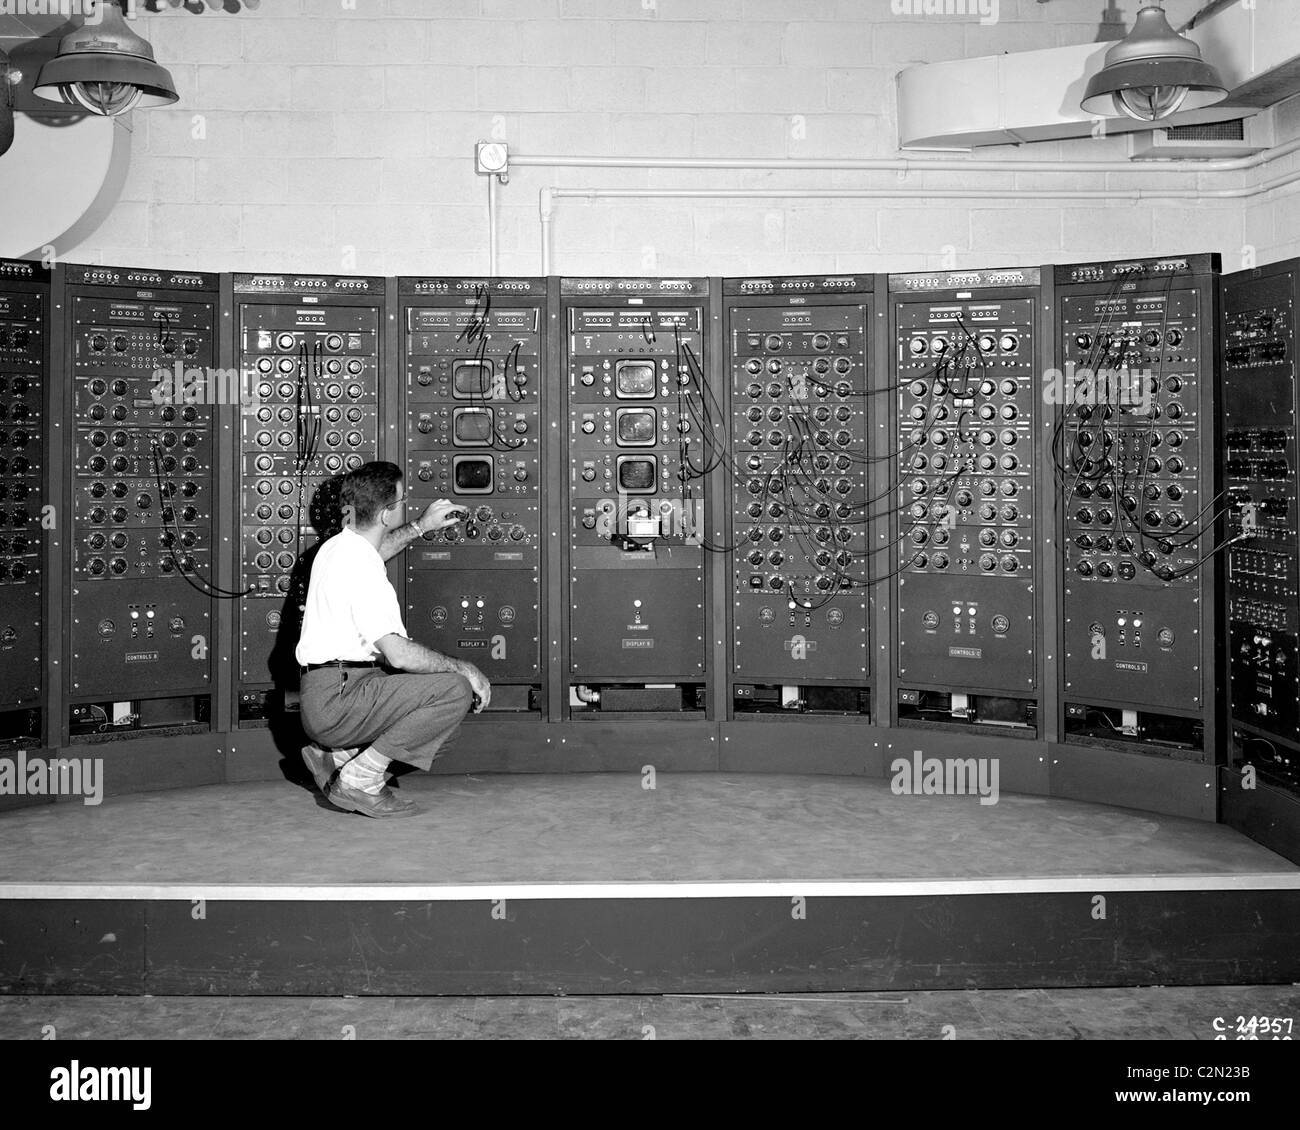 Machine de calcul analogique, une première version de l'ordinateur moderne. Banque D'Images